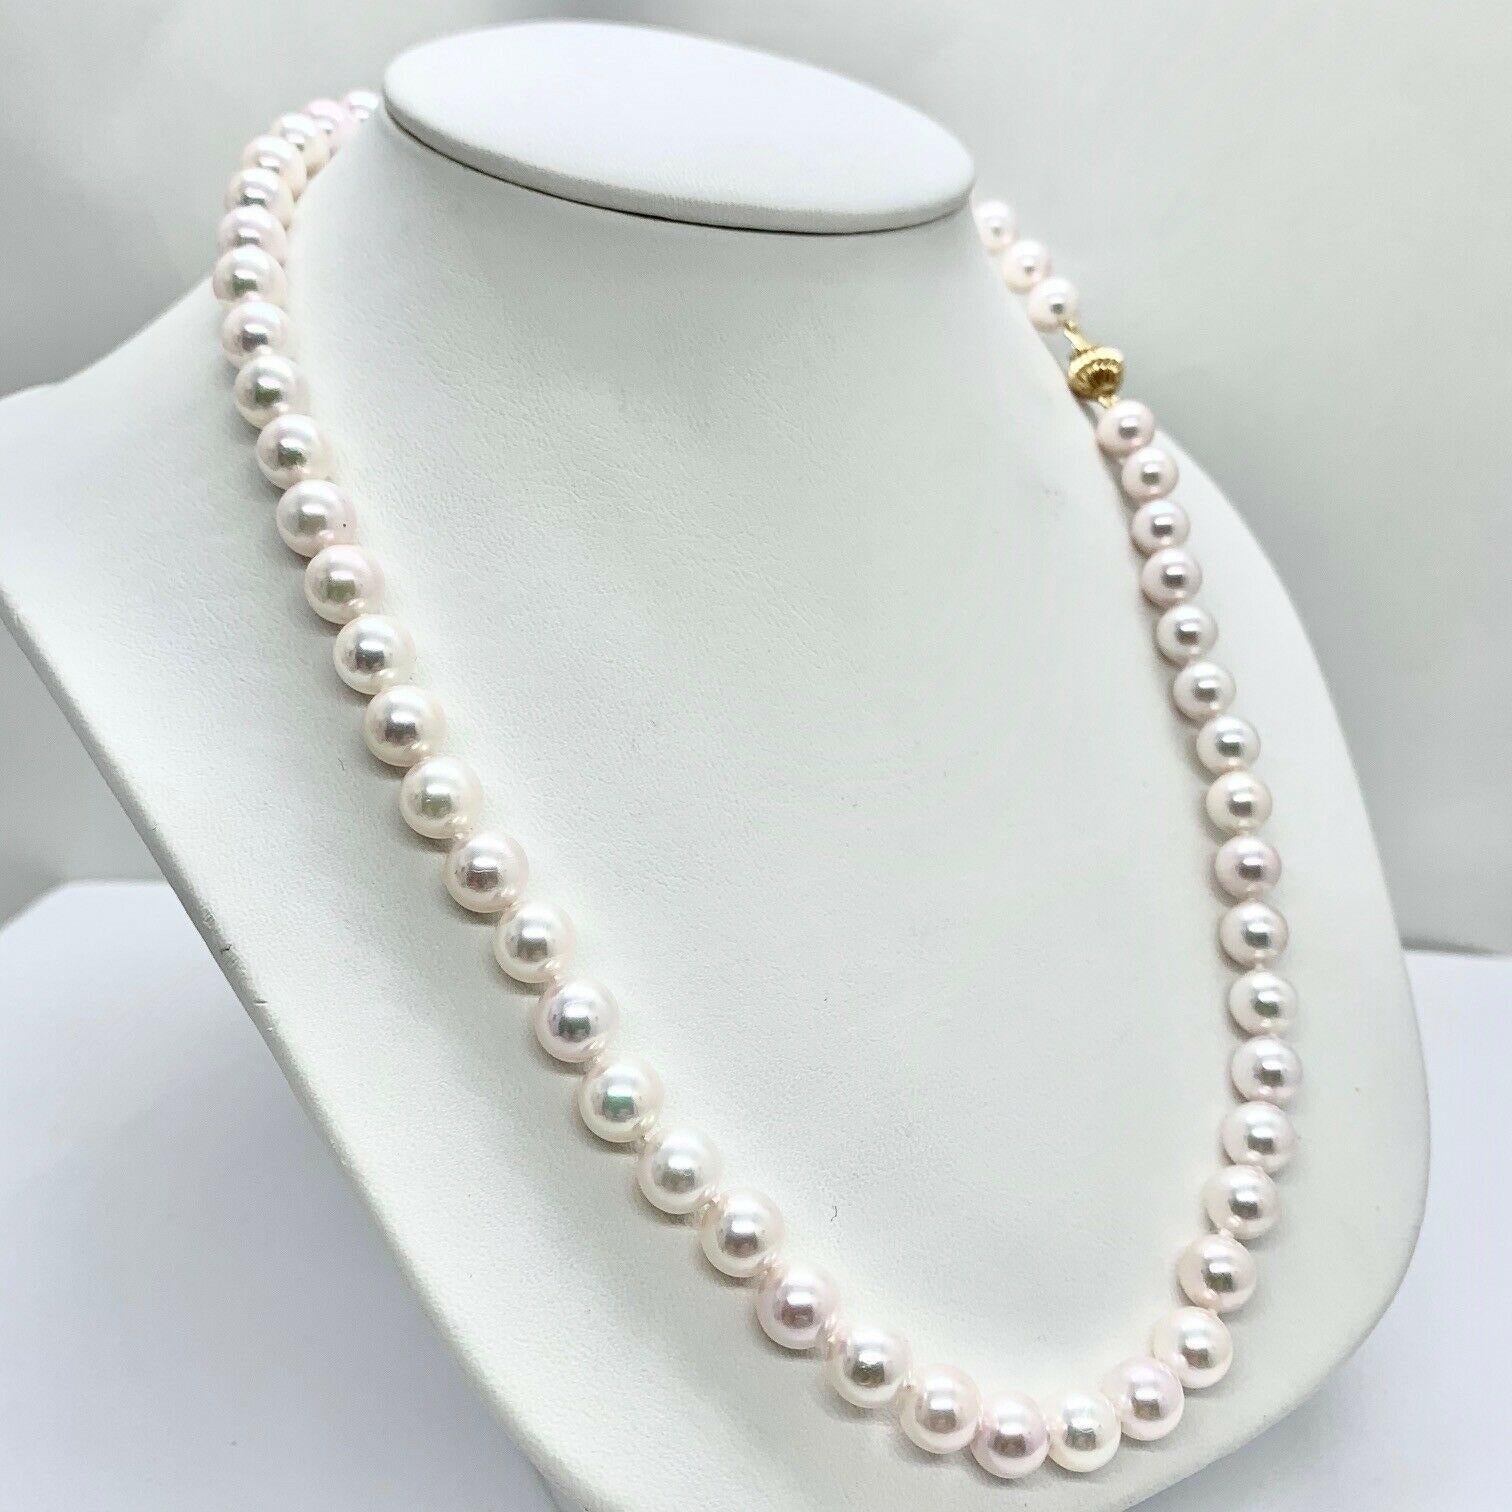 14/20l pearls